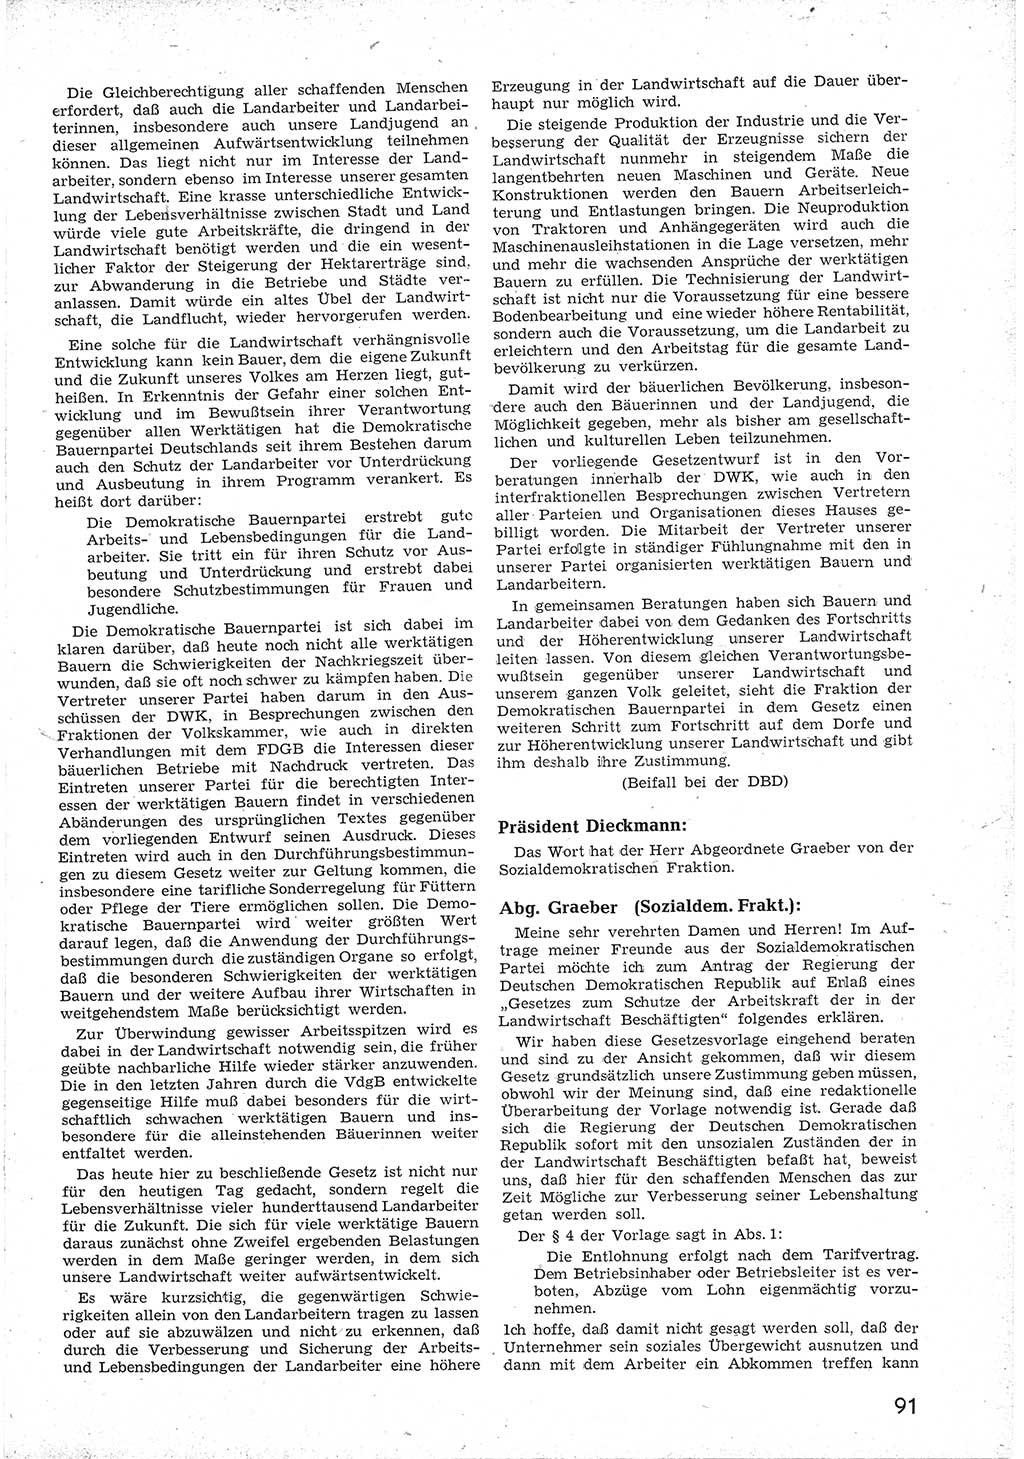 Provisorische Volkskammer (VK) der Deutschen Demokratischen Republik (DDR) 1949-1950, Dokument 103 (Prov. VK DDR 1949-1950, Dok. 103)